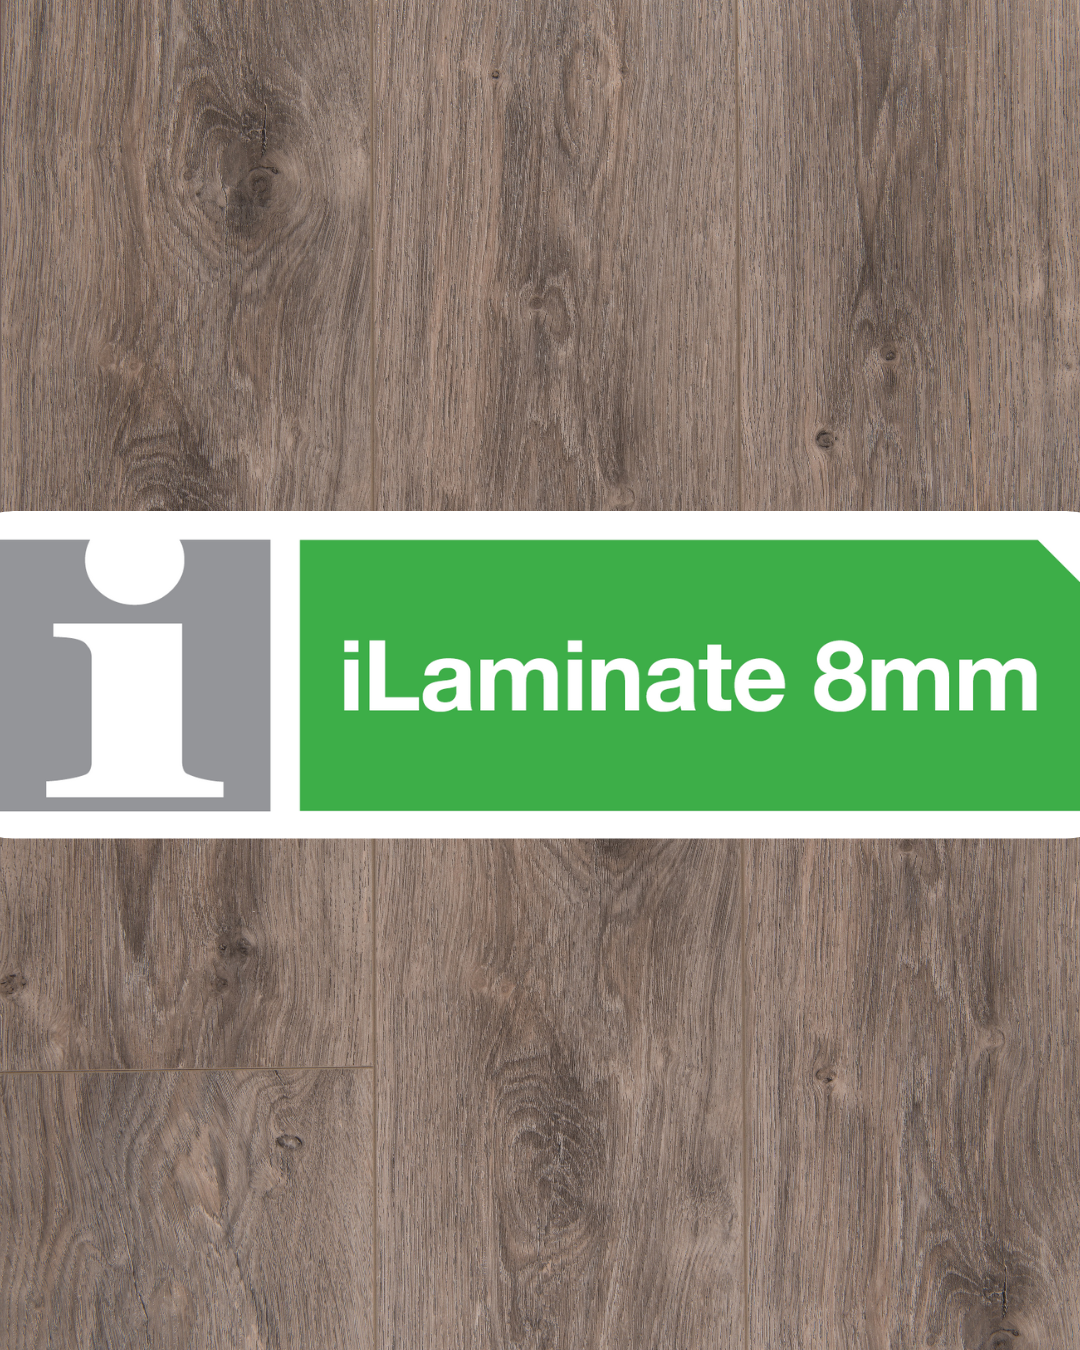 8mm iLaminate Floors